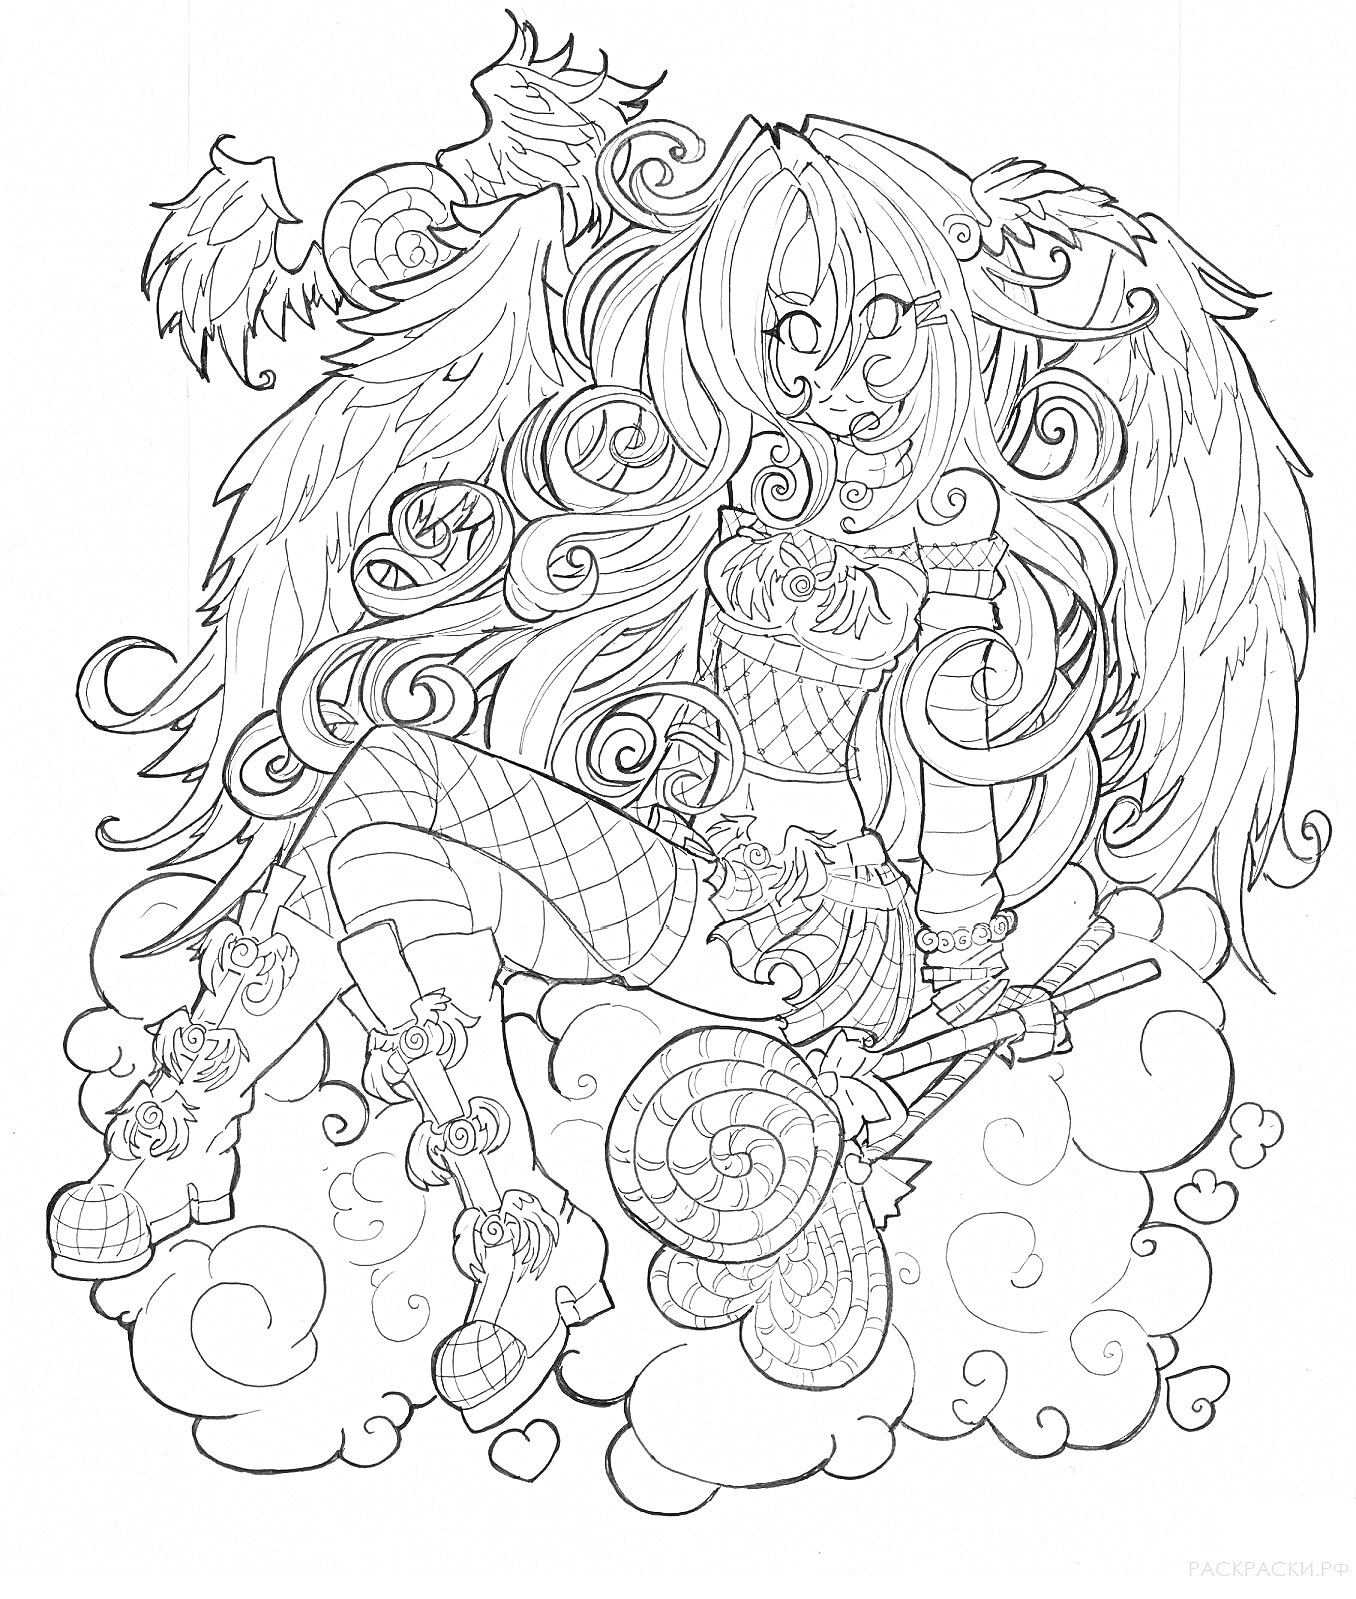 Раскраска Девушка с крыльями, длинными волосами, сидящая на облаке, с сердечками и спиралями на фоне